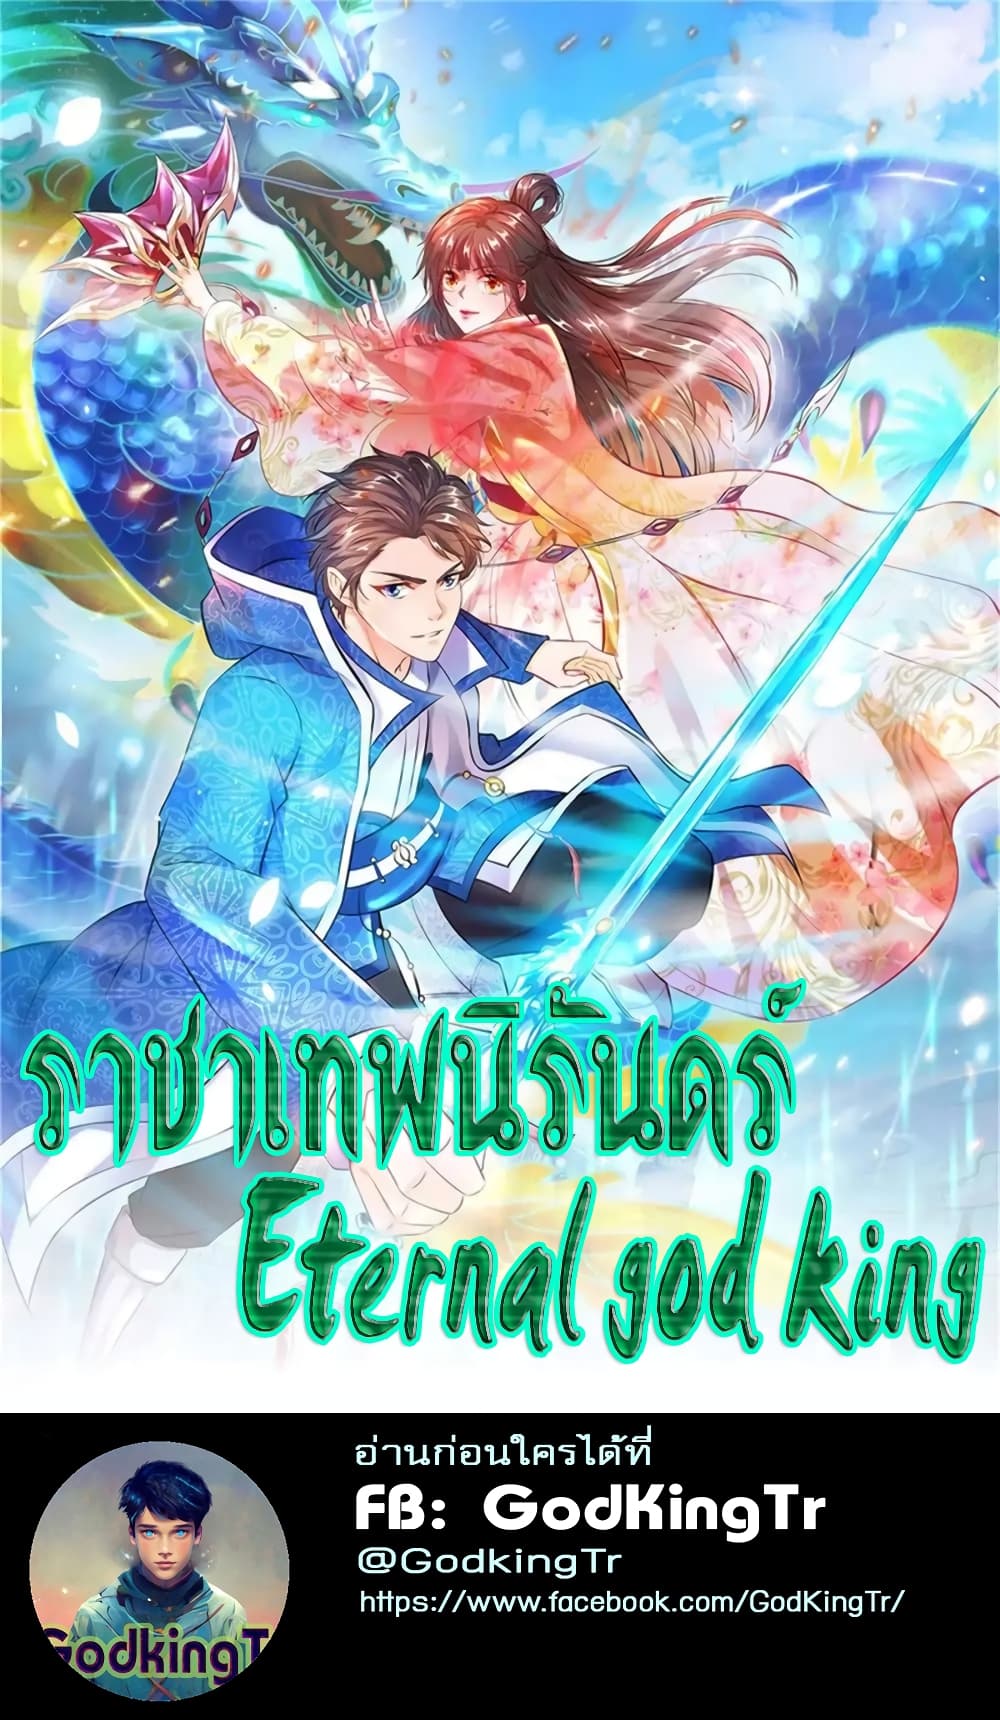 Eternal god King 91 01